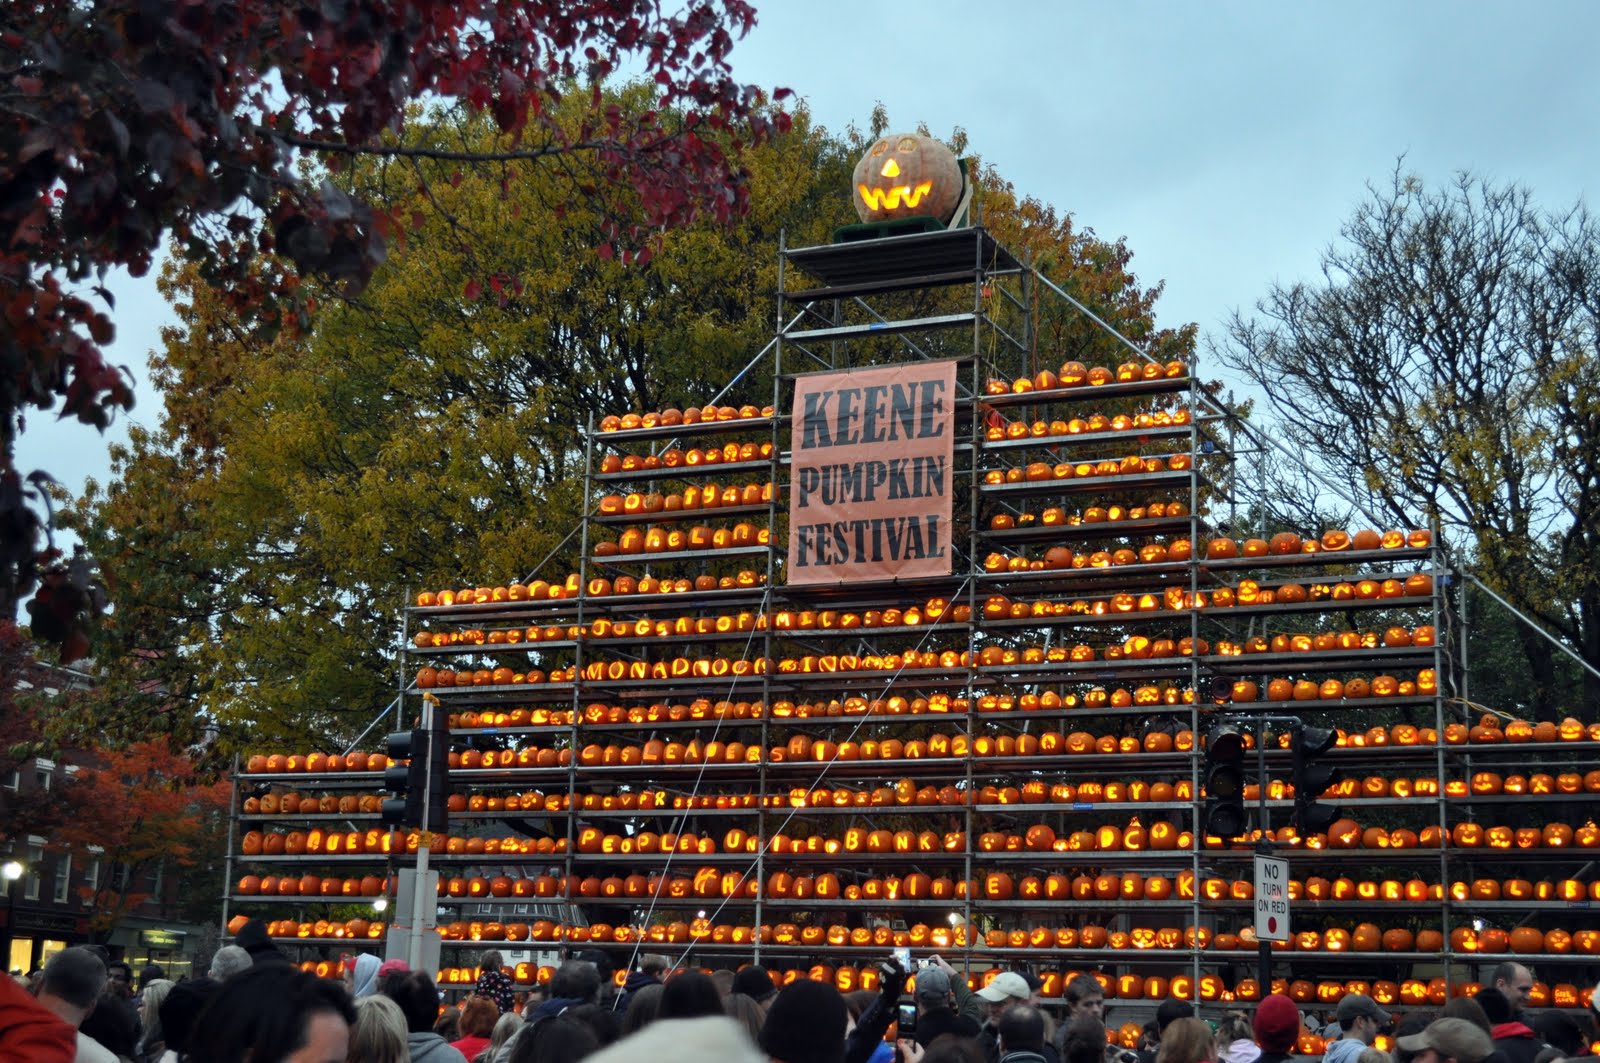 New England Photos Keene Pumpkin Festival 2011